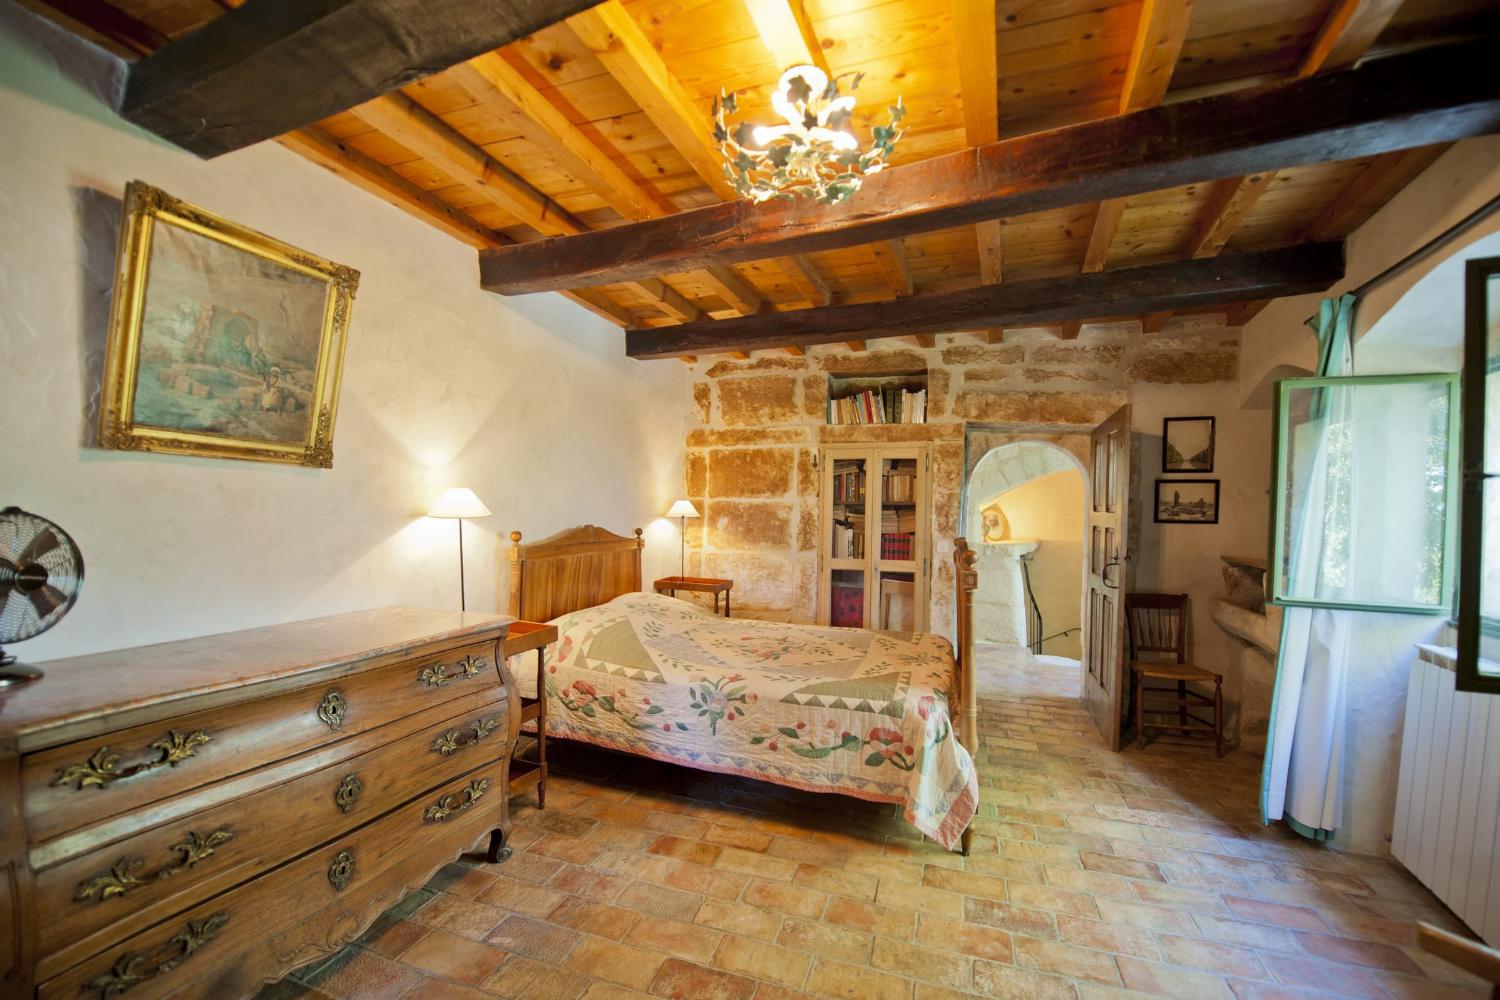 Chambre | Location maison dans le sud de la France